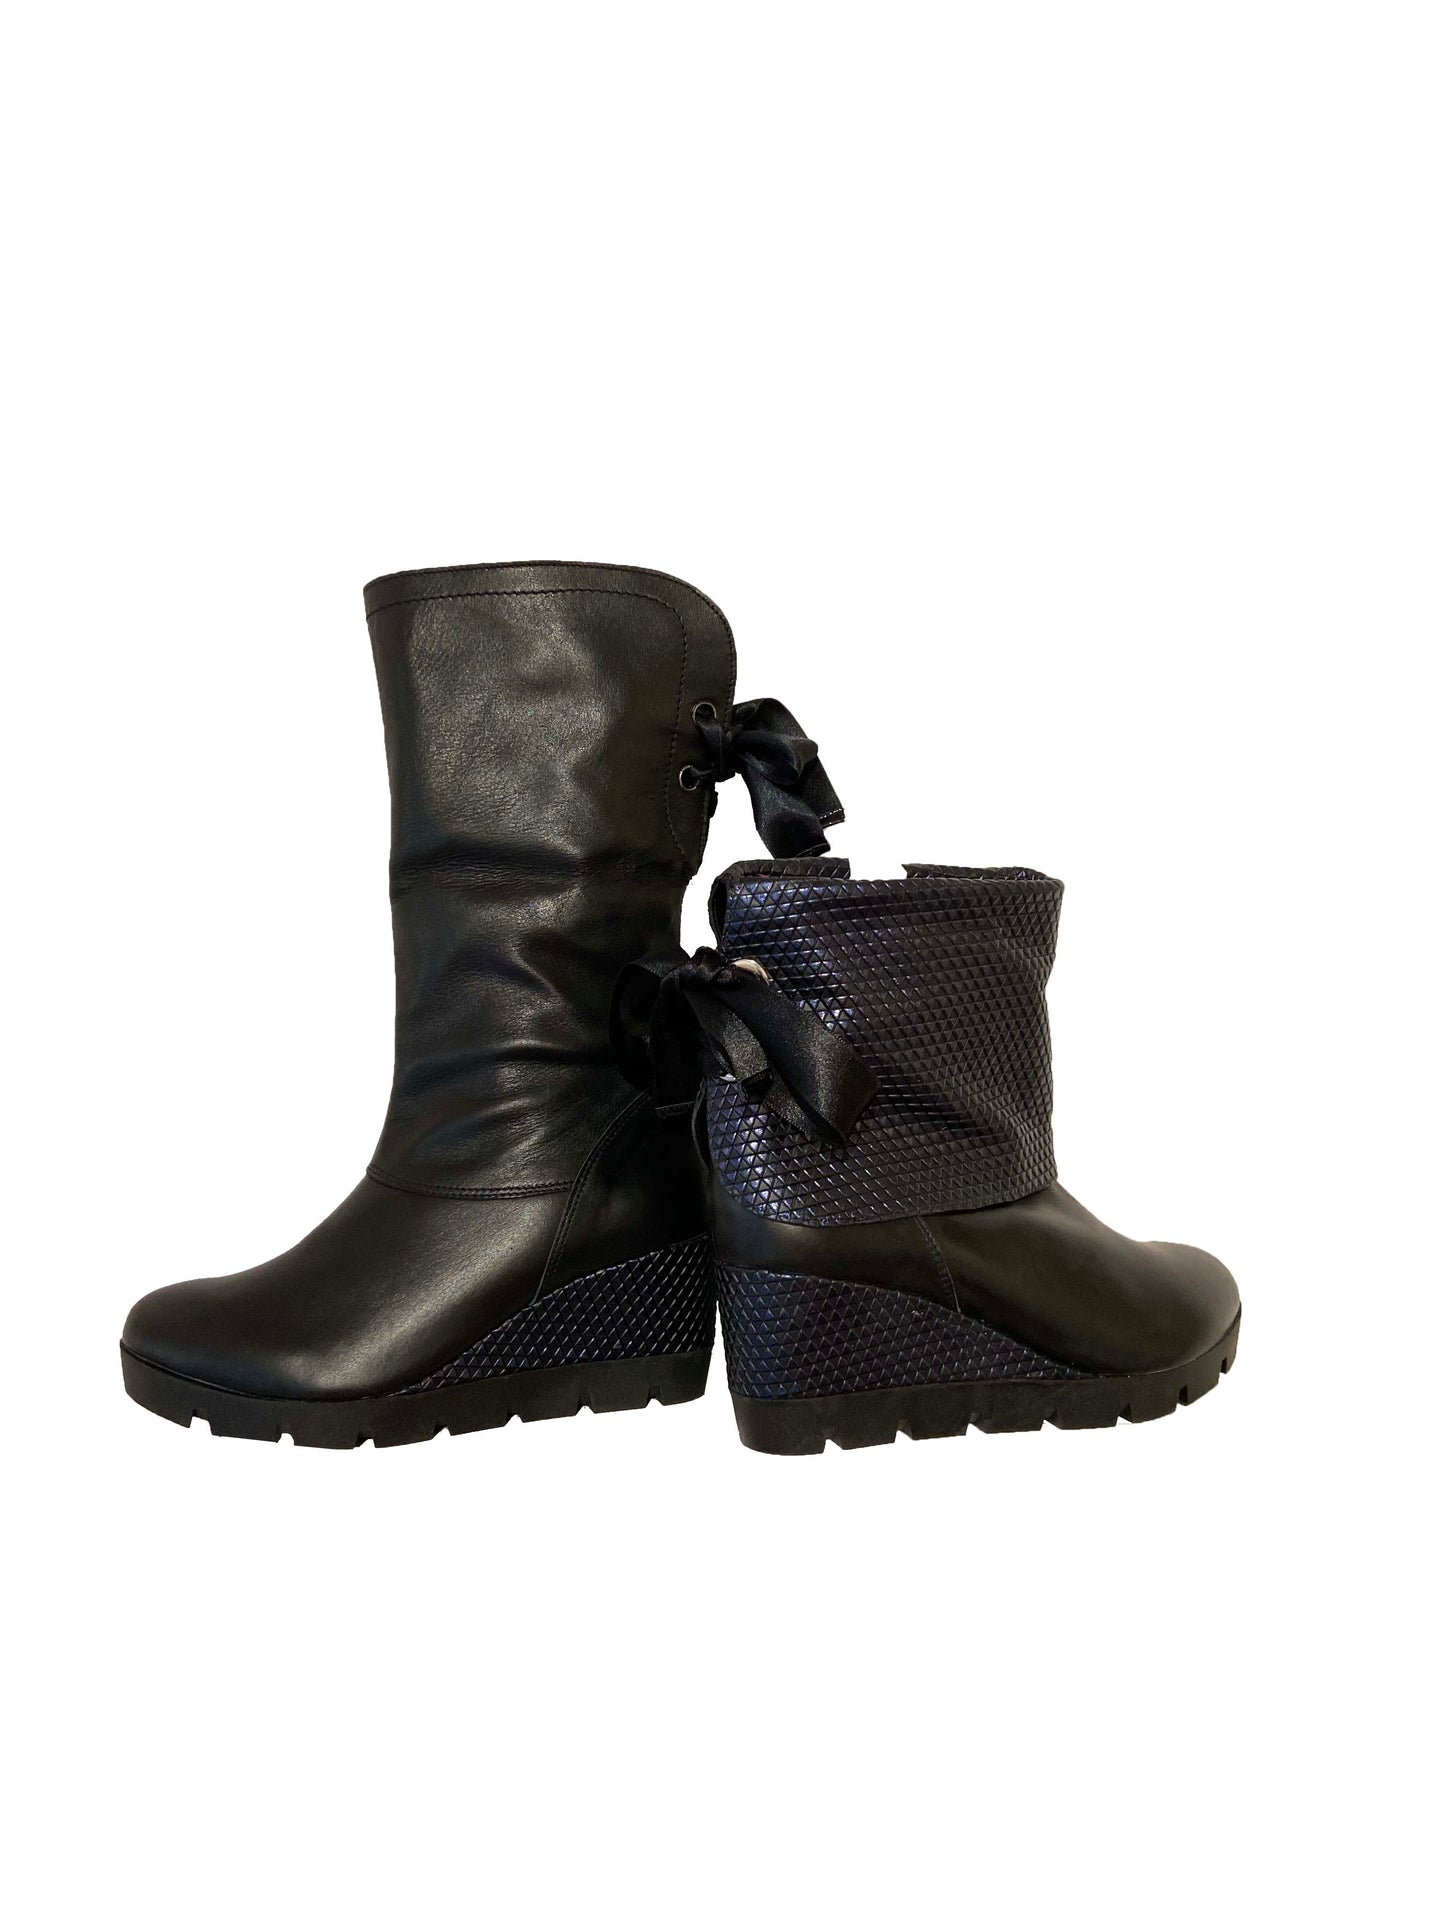 Staples- Black boot